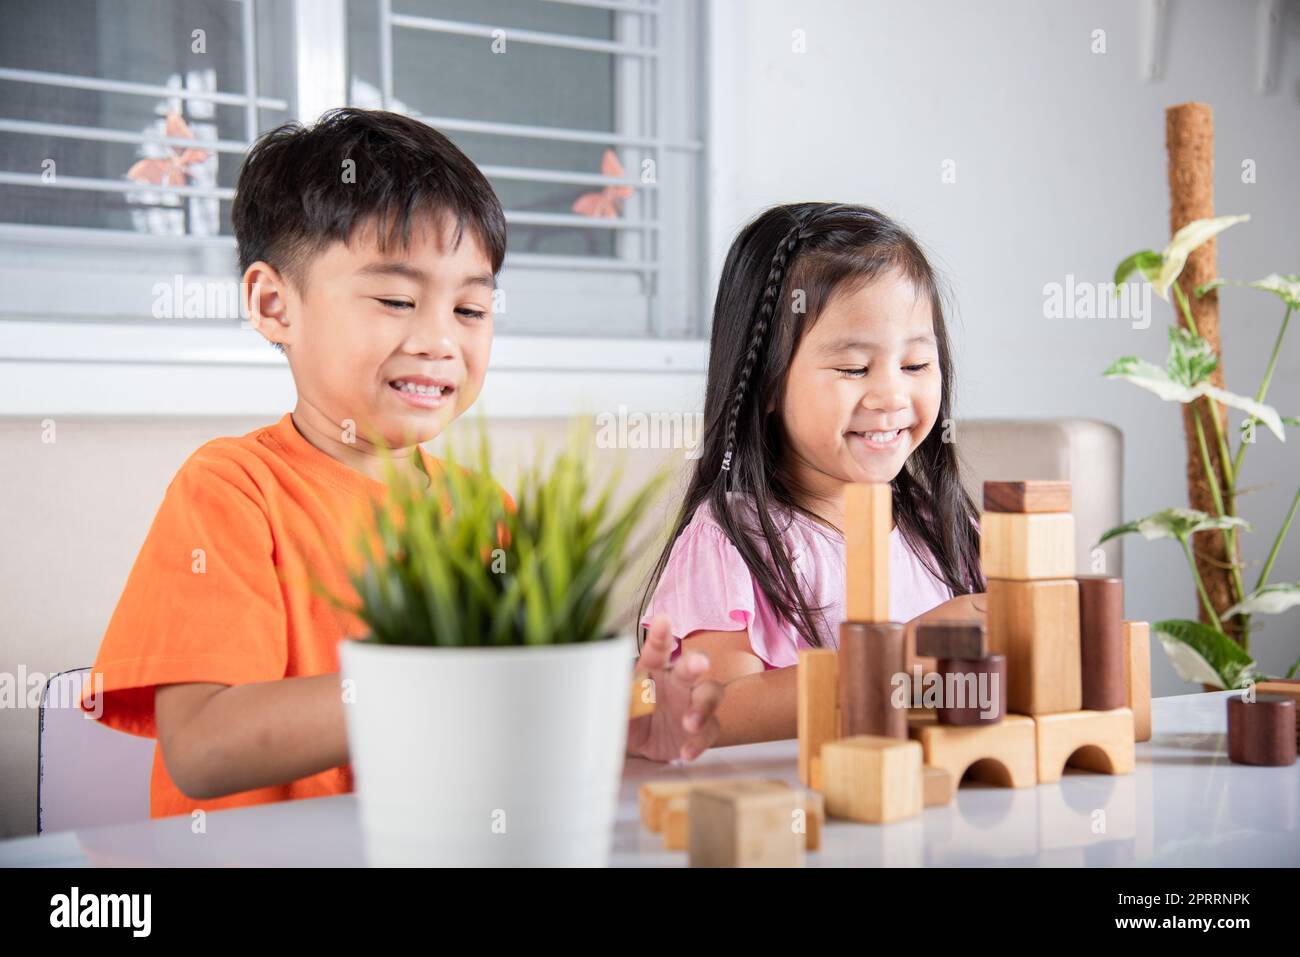 Enfants garçon et fille jouant avec constructeur en bois bloc bâtiment Banque D'Images